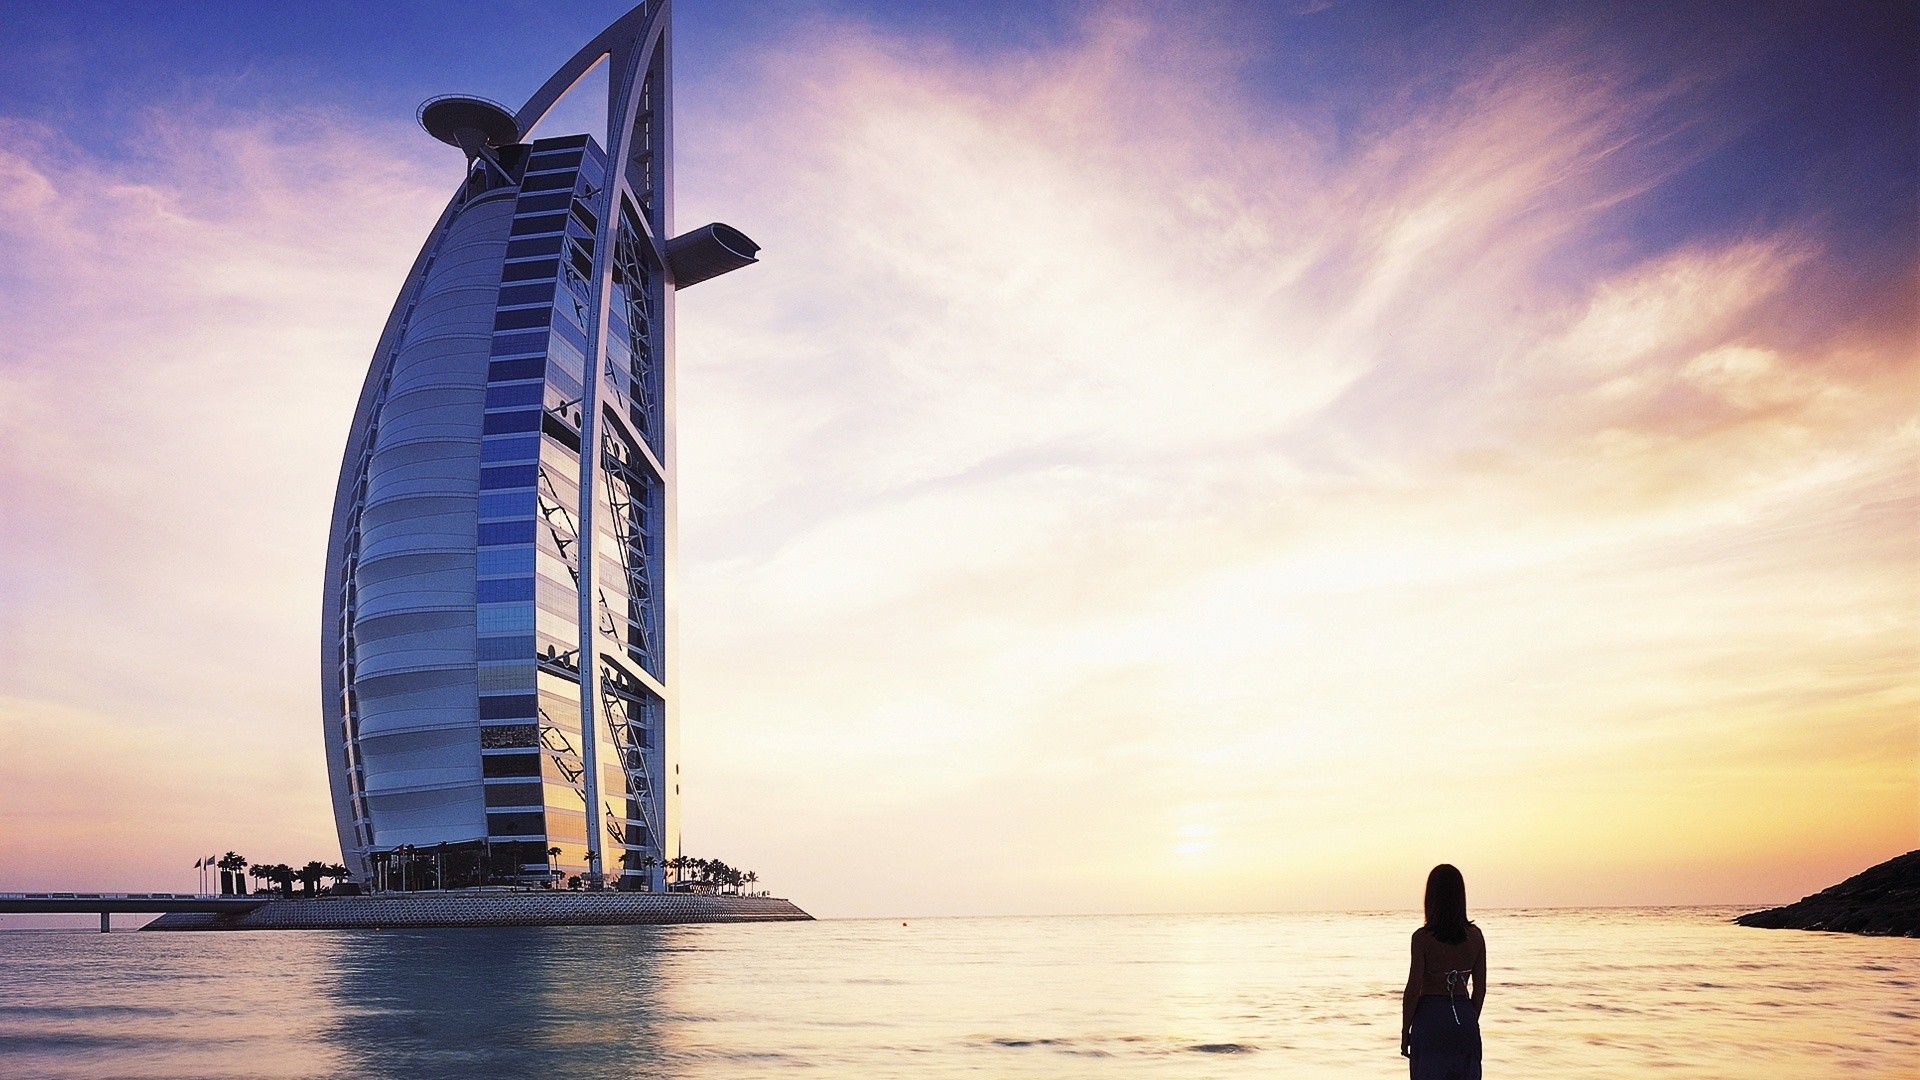 women, Water, Coast, Architecture, Buildings, Dubai, Skyscapes, Burj, Al, Arab, Sea Wallpaper